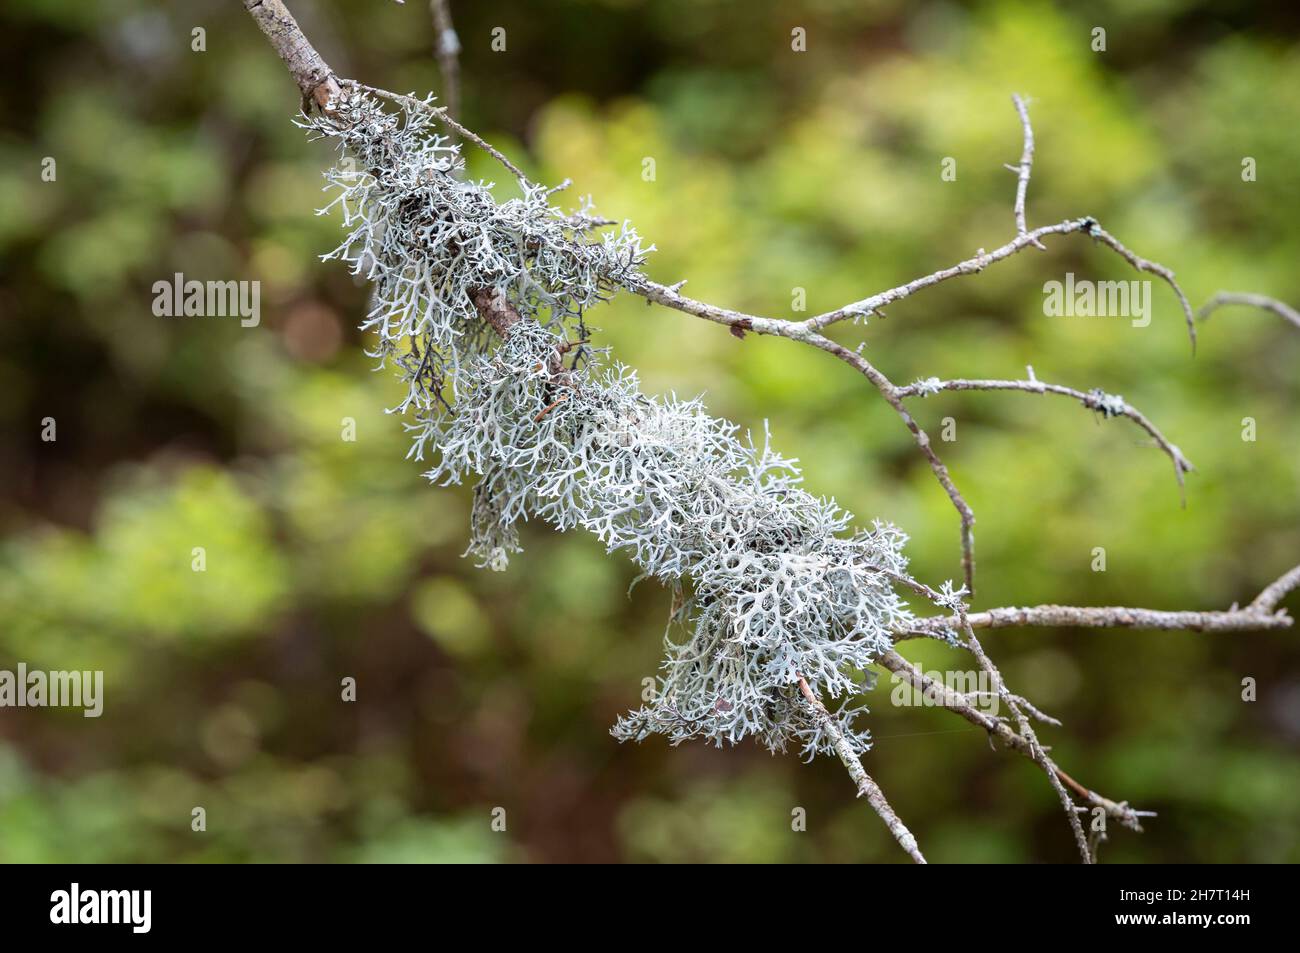 Lichen di renna grigia, muschio di renna, muschio di renna o muschio di Caribou - Cladonia rangiferina, che cresce su un ramo con sfondo verde. Foto Stock